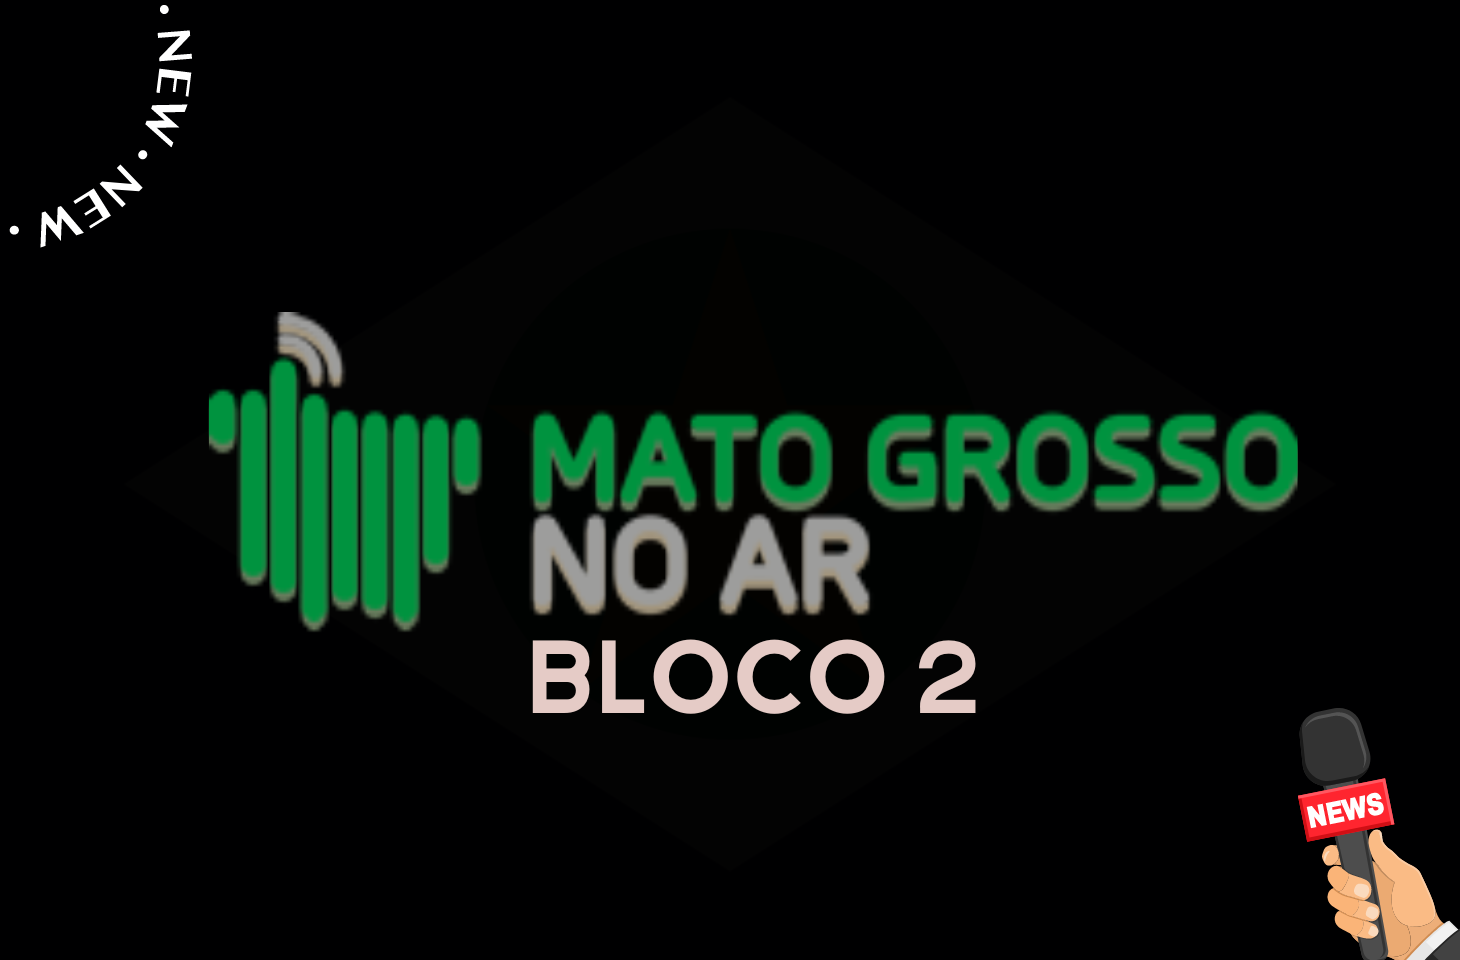 Jornal Mato Grosso No Ar - Bloco 2 - 09-02